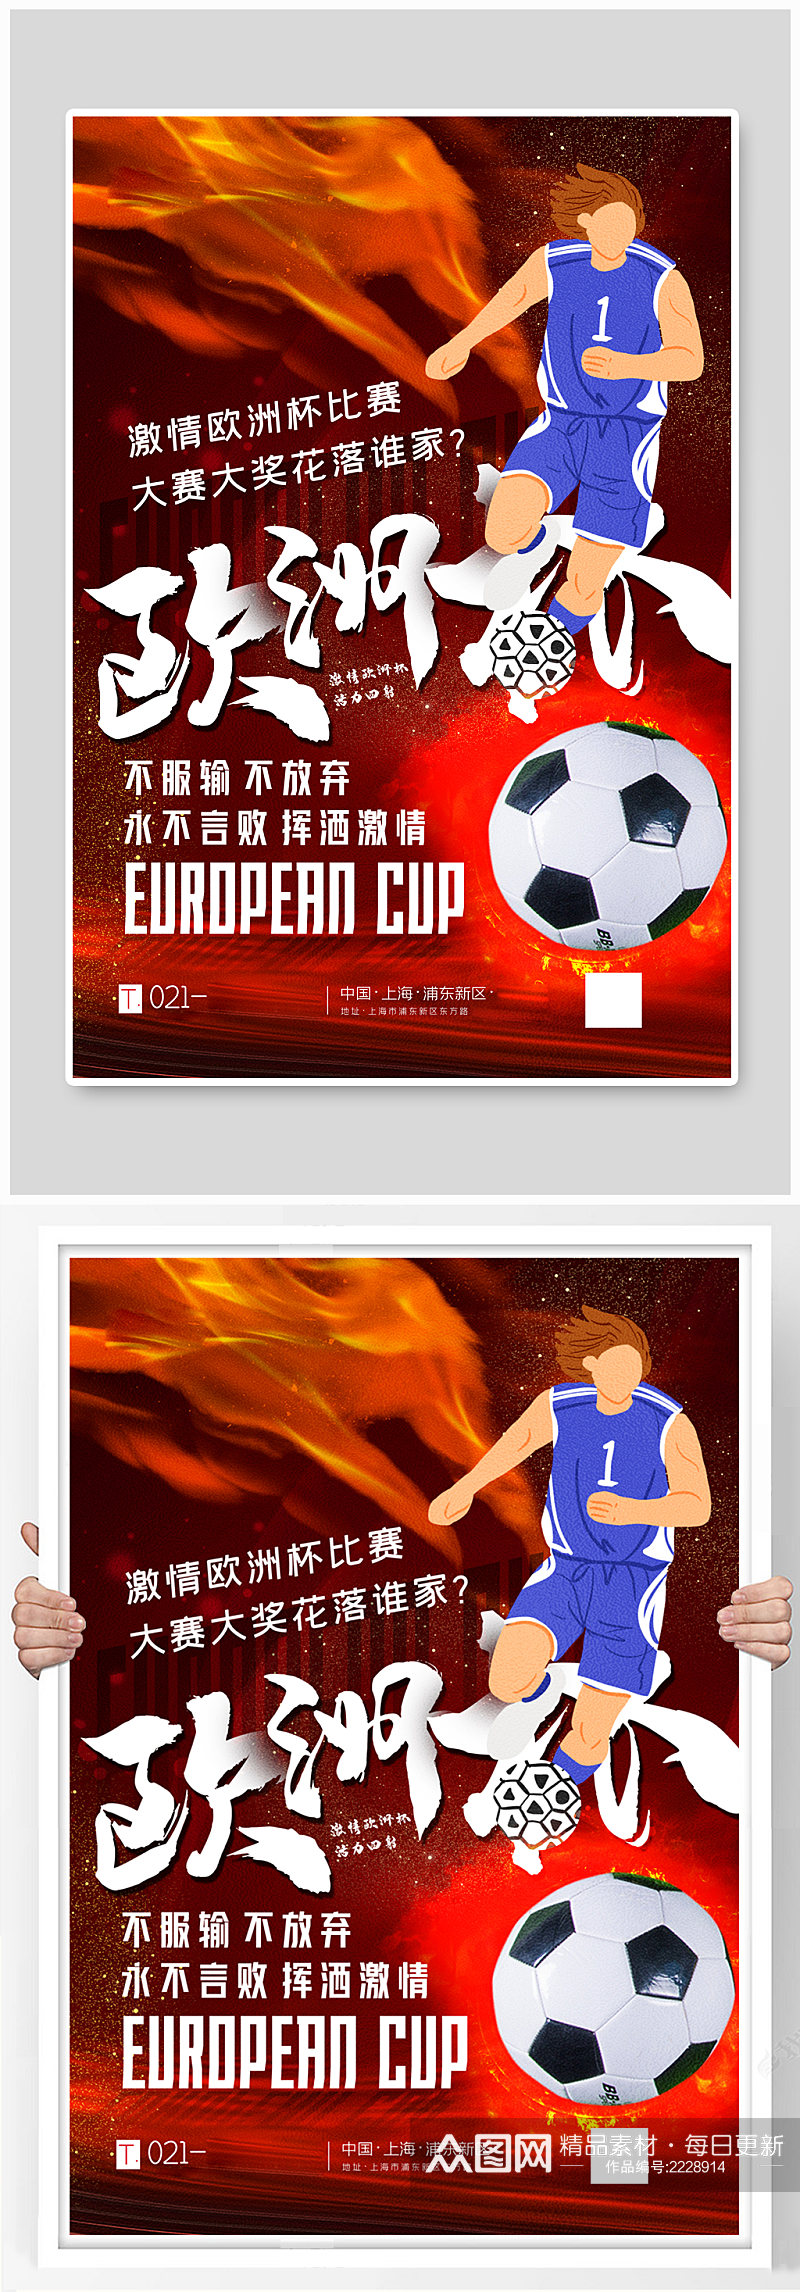 红色大气激情欧洲杯比赛海报素材